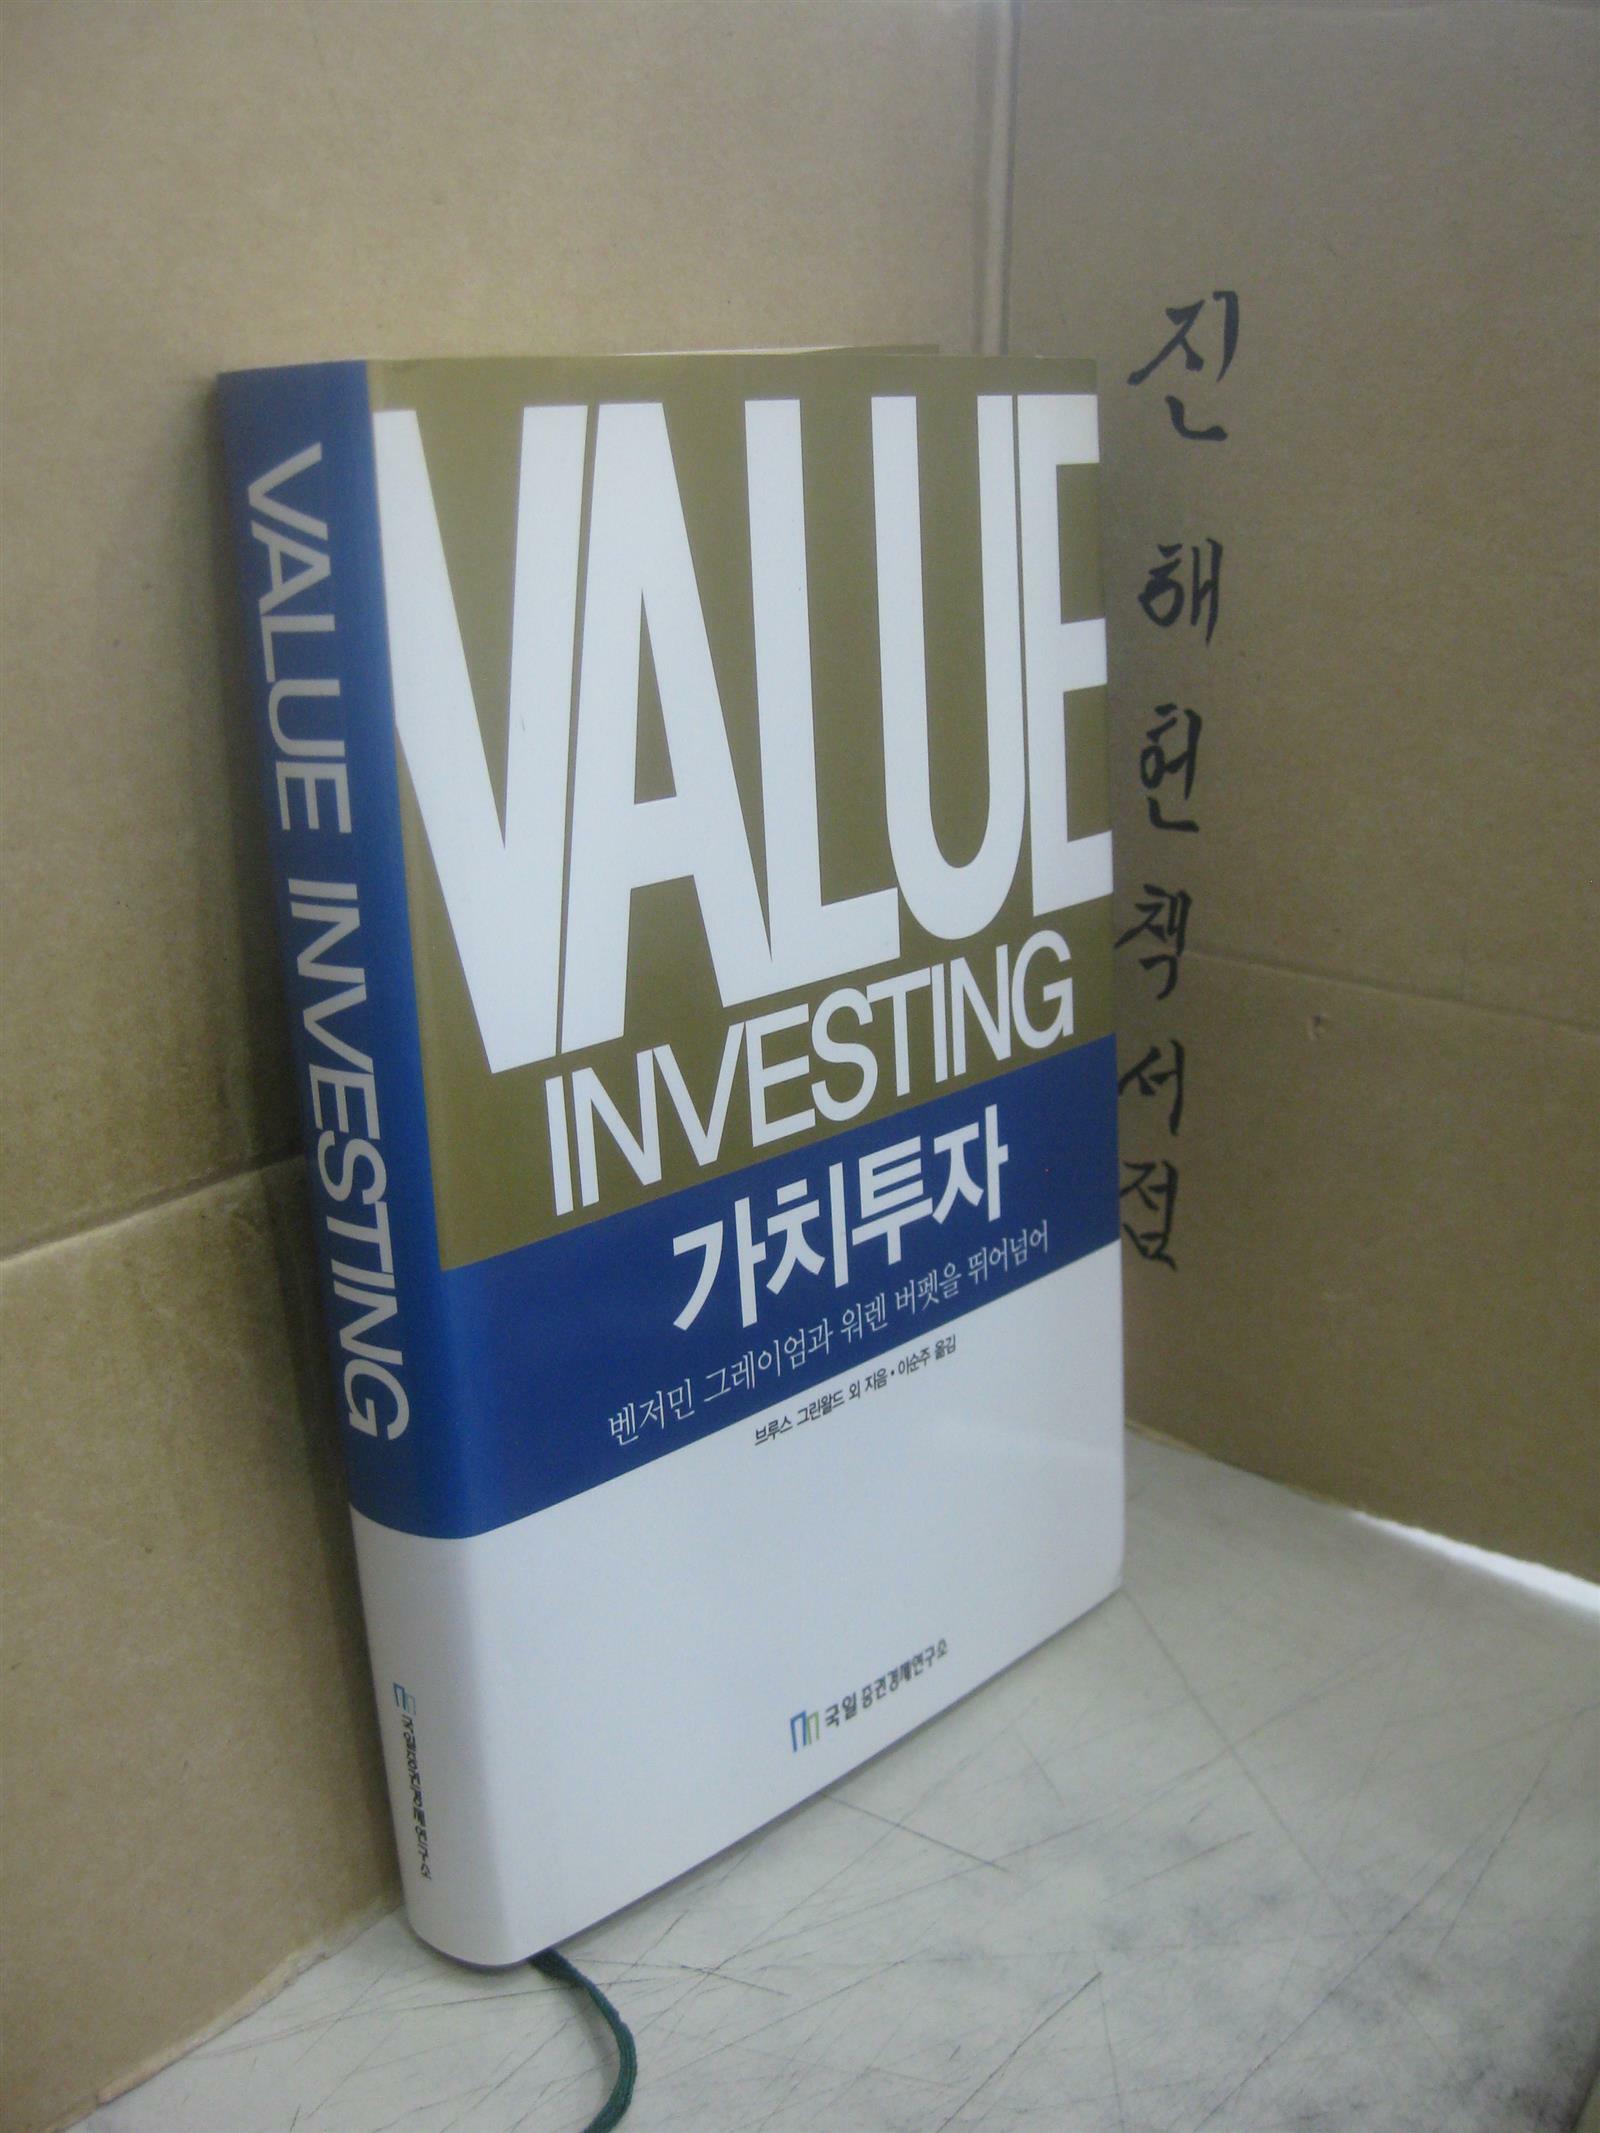 [중고] Value Investing: 가치투자